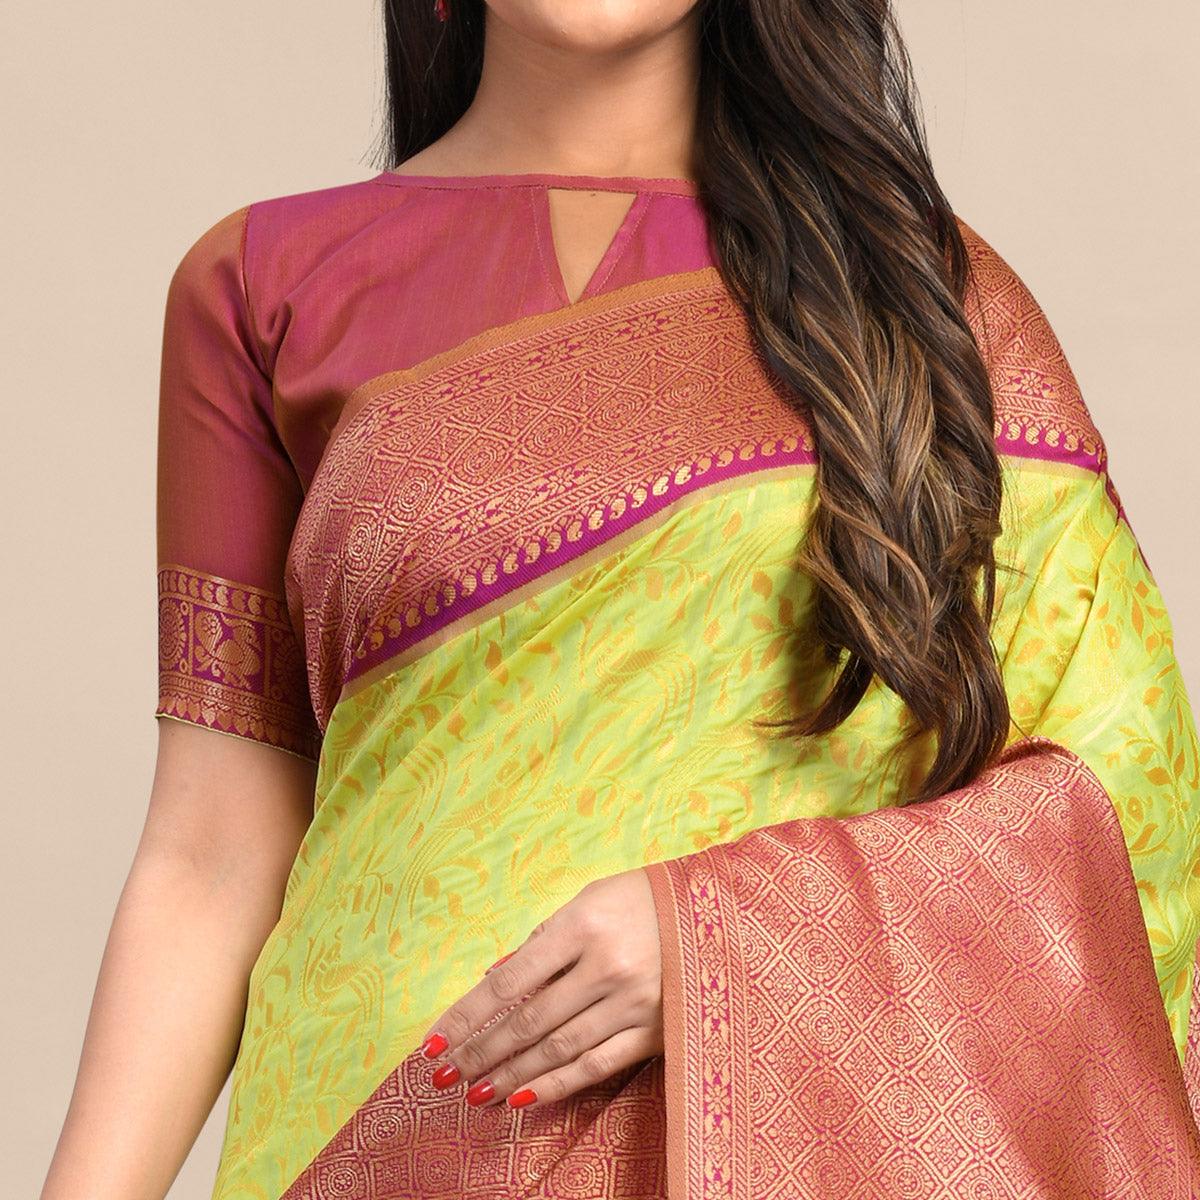 Lemon-Pink Festive Wear Rich Woven Border Soft Banarasi Silk Saree - Peachmode